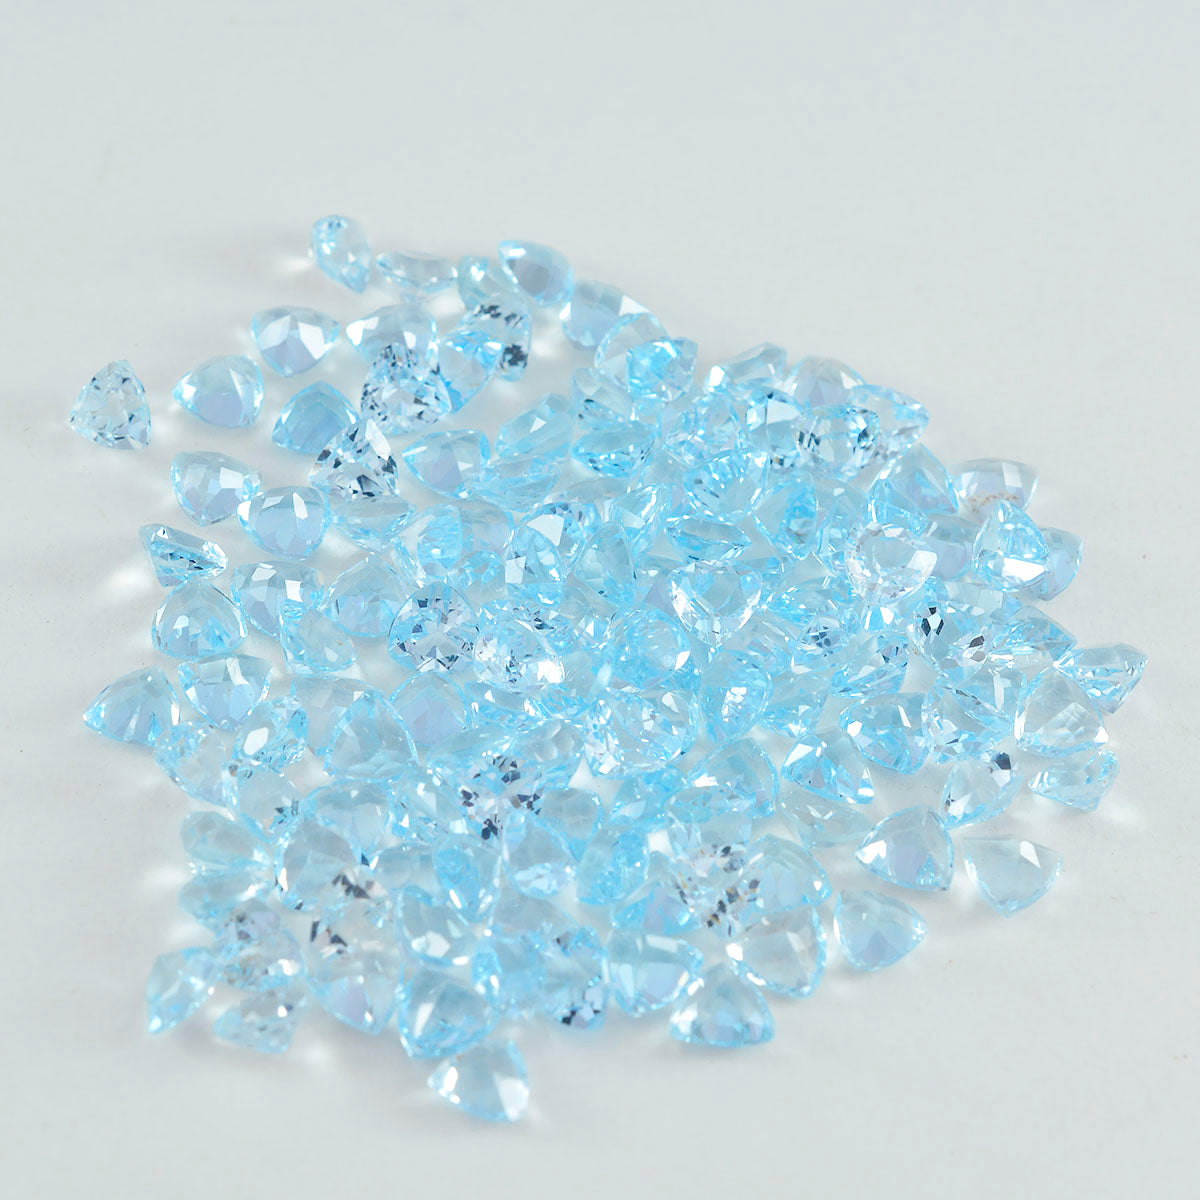 riyogems 1 шт. натуральный синий топаз ограненный 4x4 мм форма триллиона, довольно качественный камень